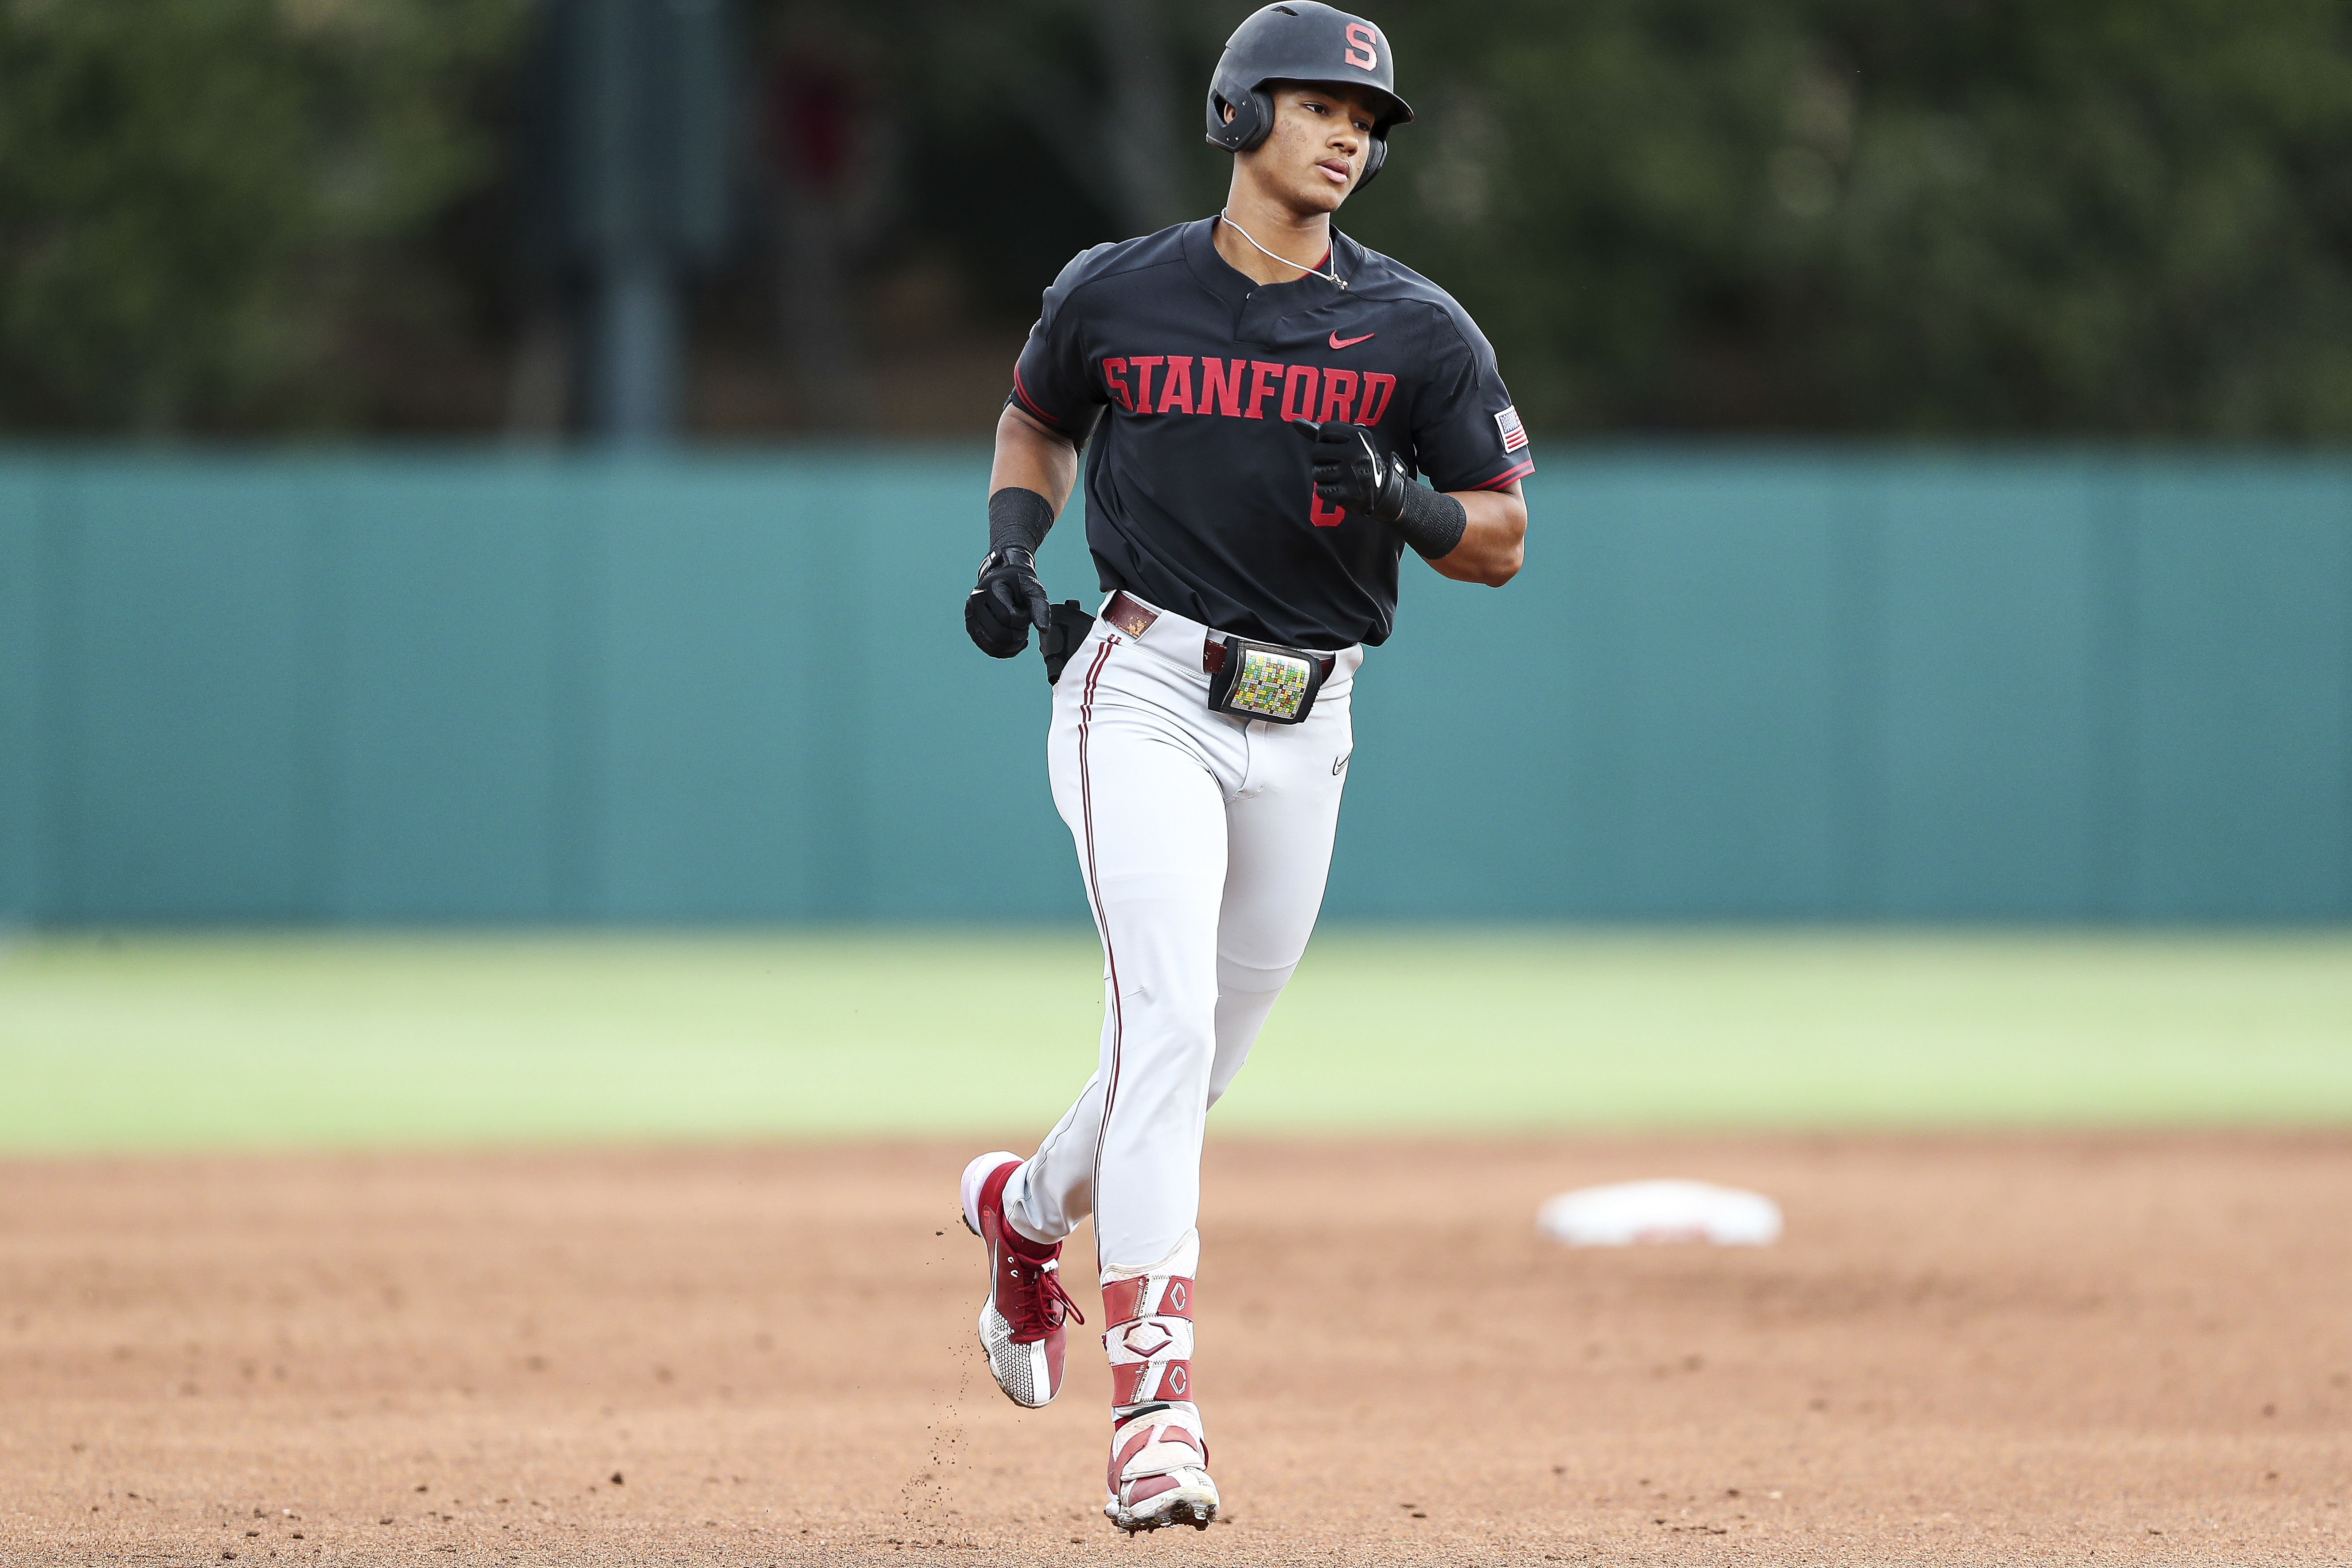 Stanford Baseball